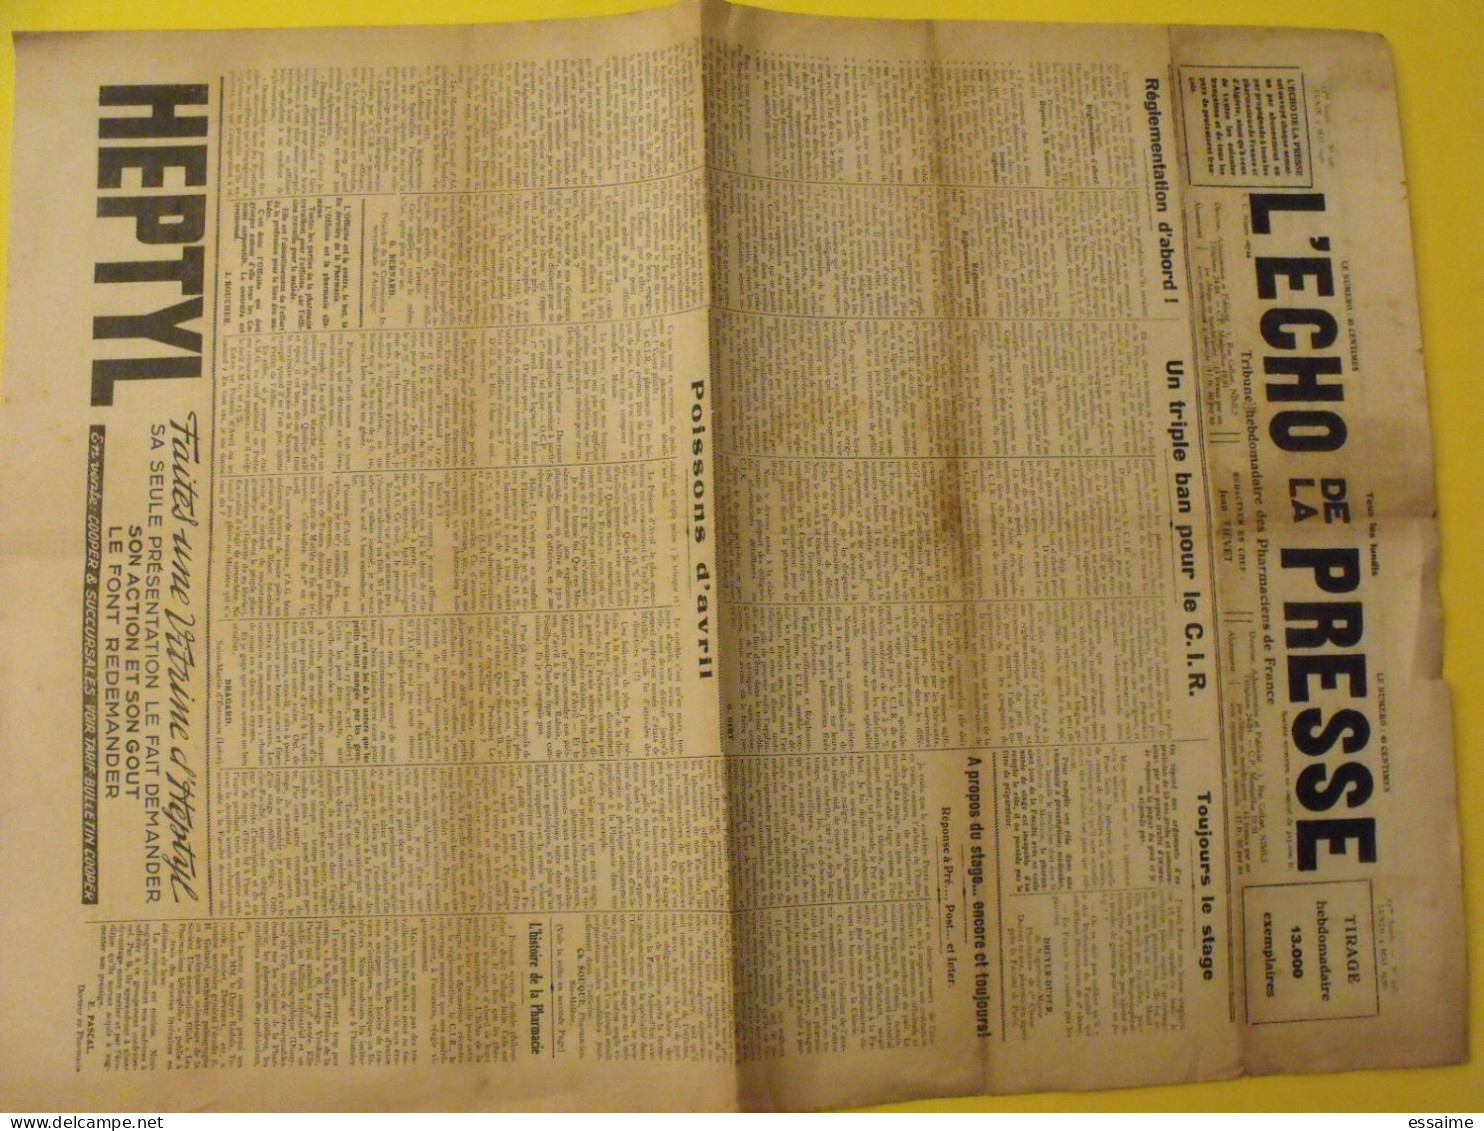 3 n° de L'Echo de la Presse de 1931-1936. Pharmaciens de France CNPF réglementation